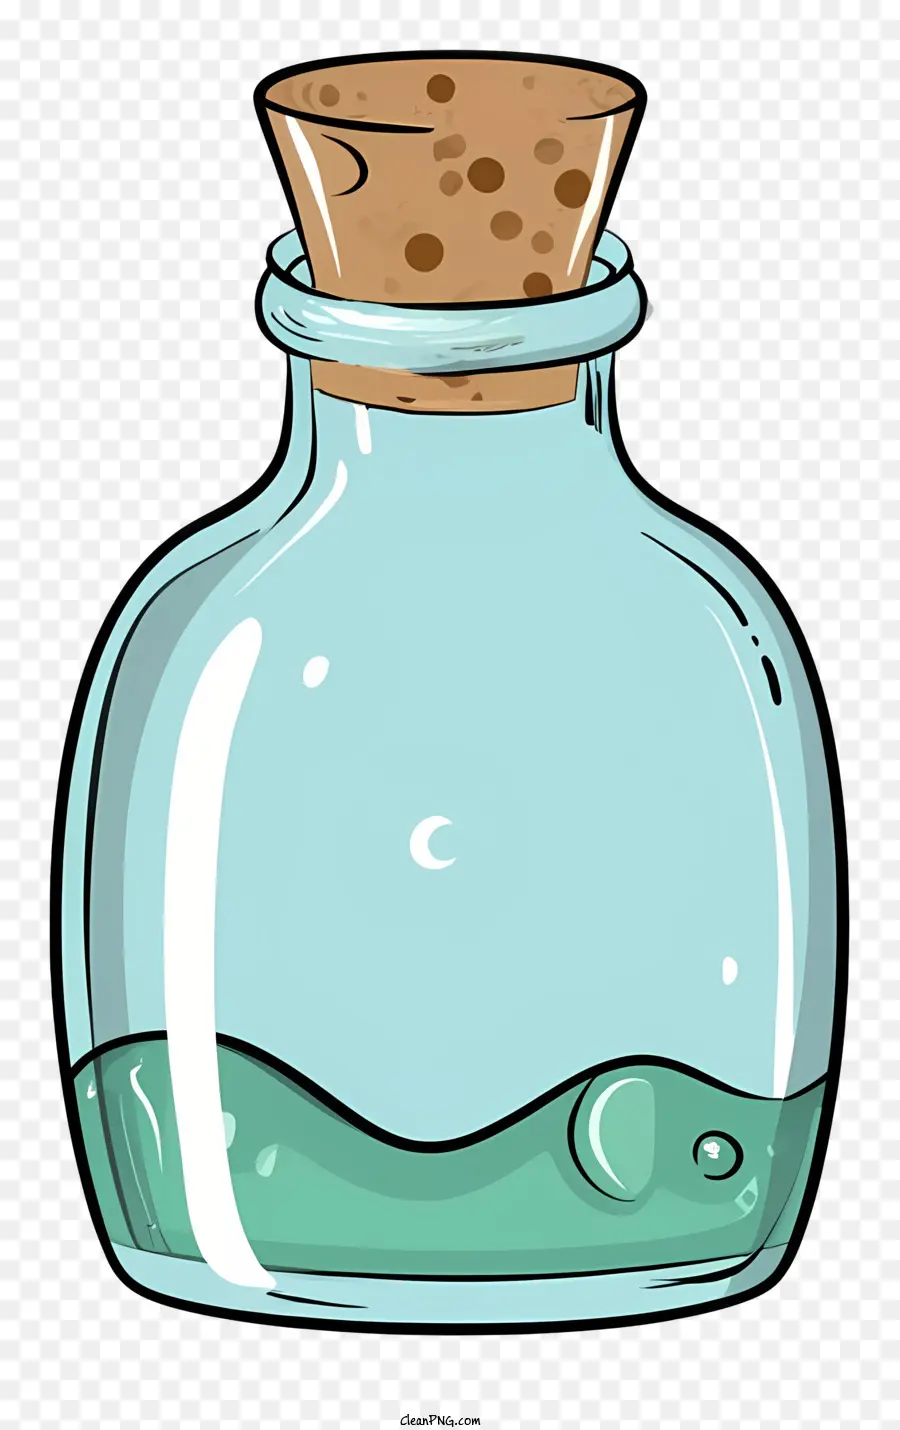 Wasser Blasen - Transparente grüne Glasflasche mit Blasen und Korken